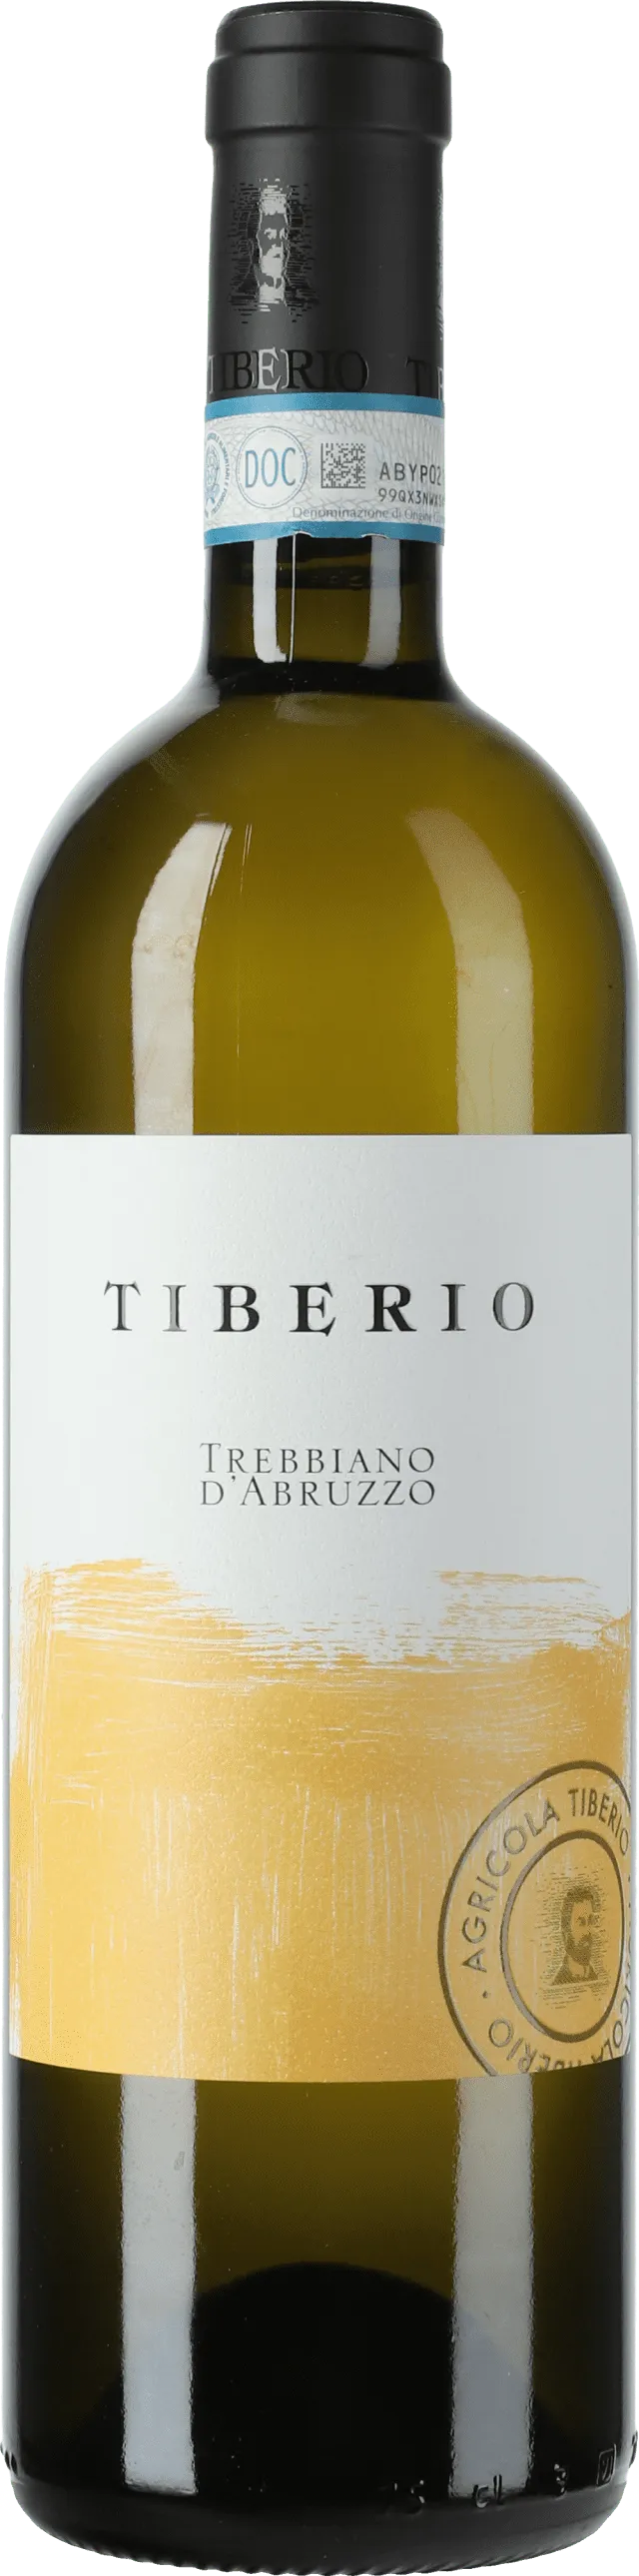 Bottle of Tiberio Trebbiano d'Abruzzo from search results